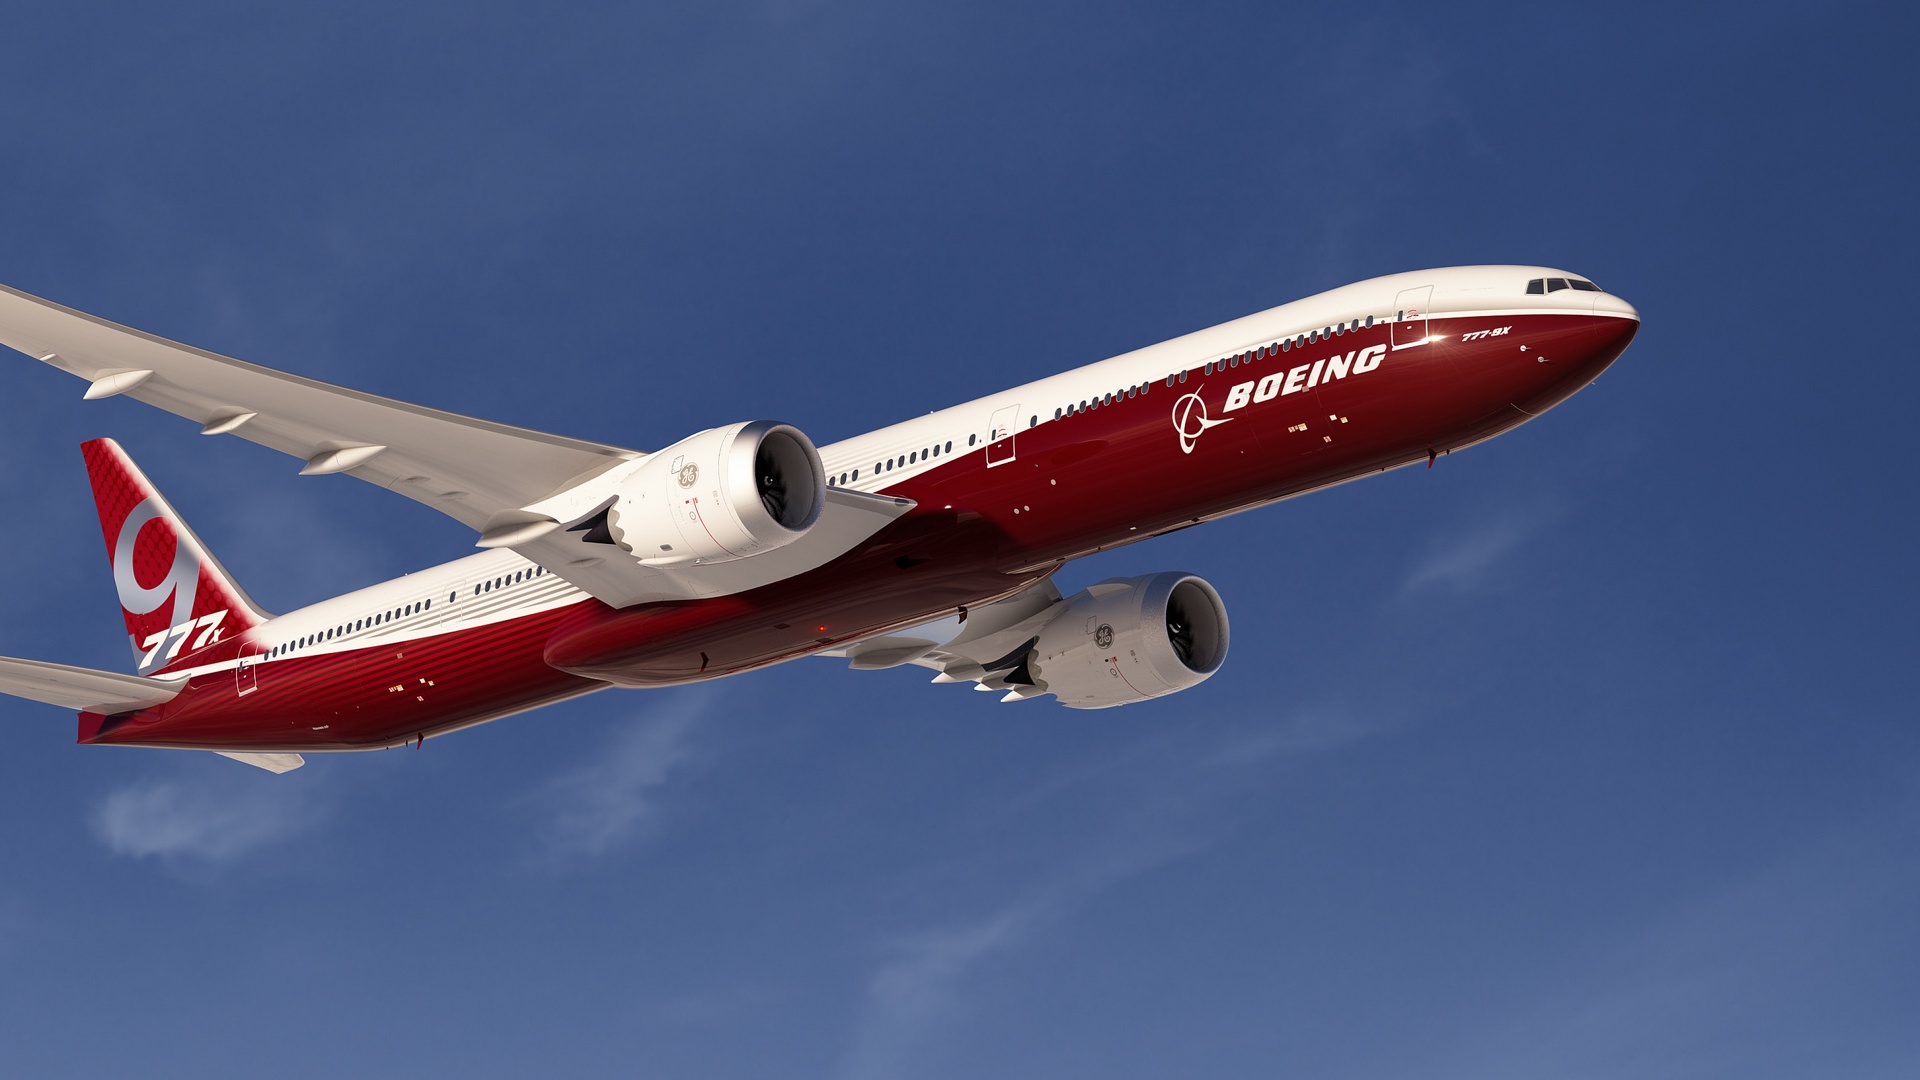 Boeing 777 - wallpaper 4K.jpg